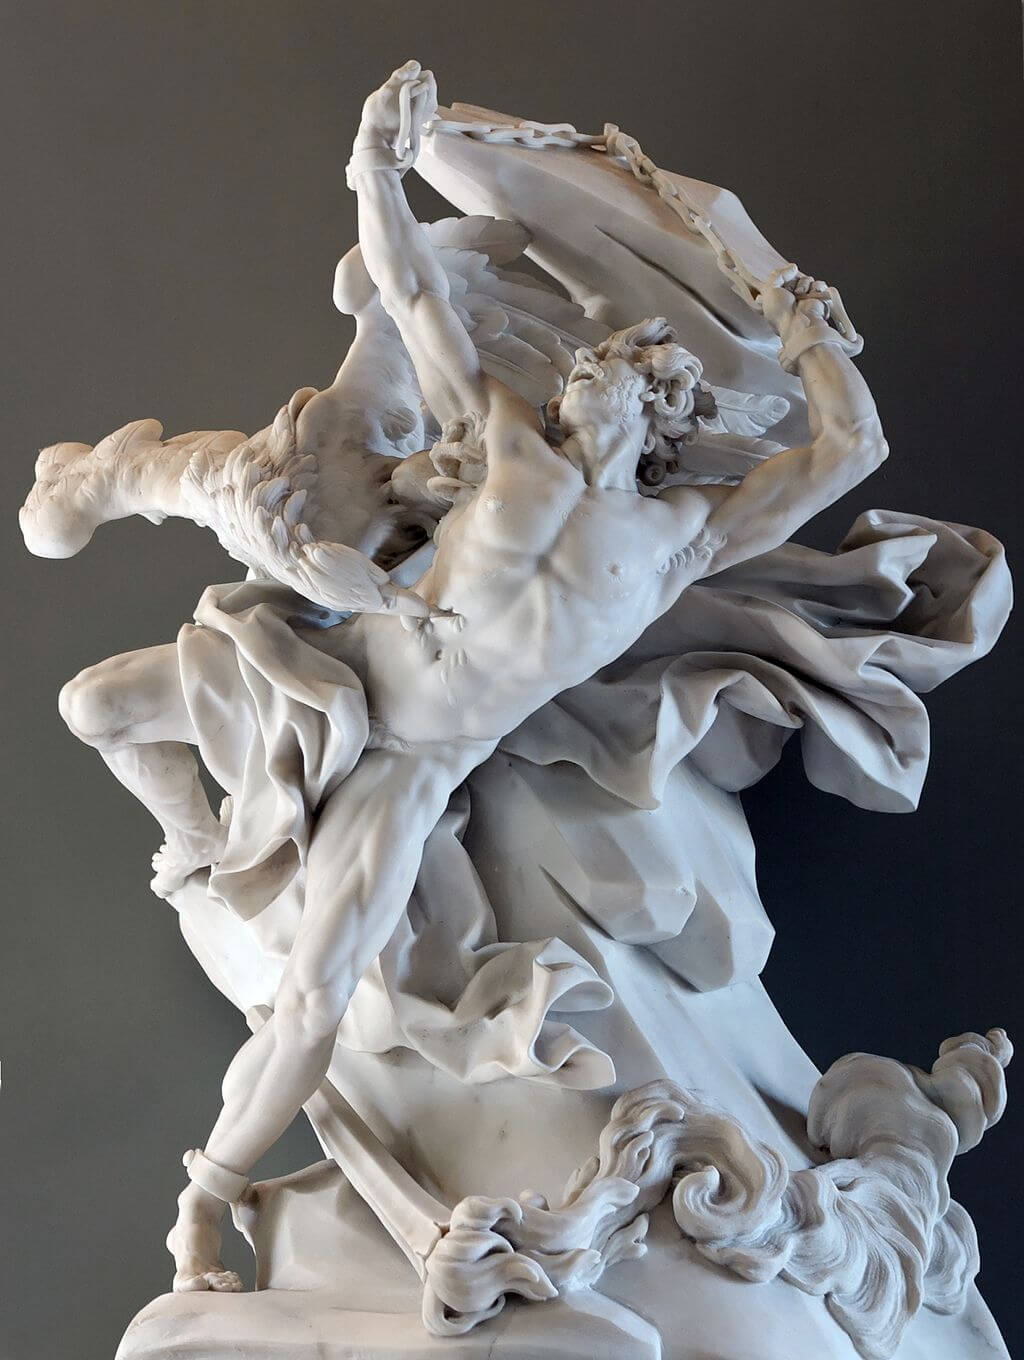 Prometheus Bound by Nicolas-Sebastien Adam in the Louvre Museum in Paris